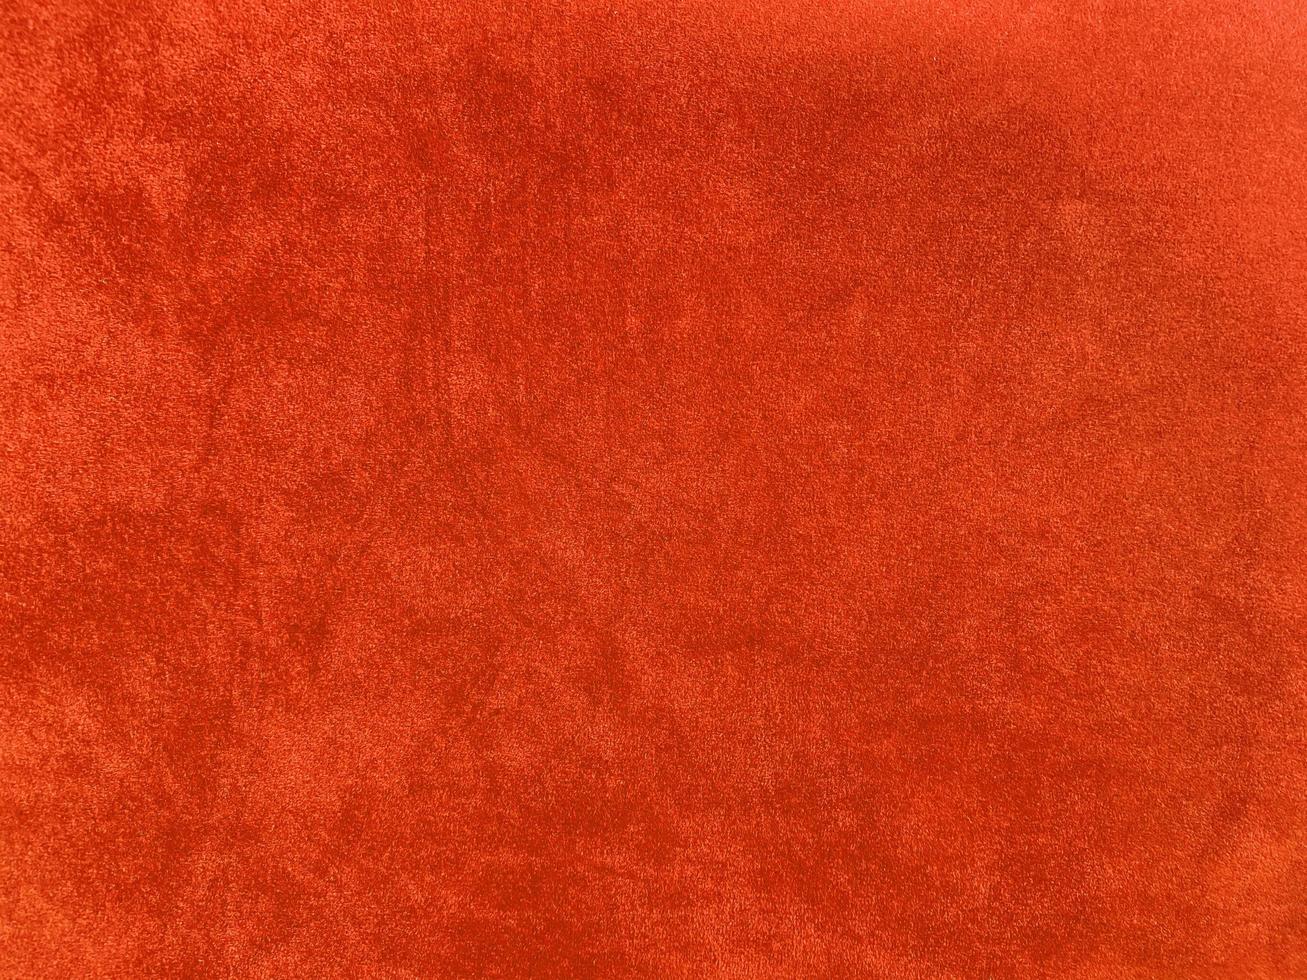 textura de tecido de veludo laranja usada como plano de fundo. fundo de tecido laranja vazio de material têxtil macio e liso. há espaço para o texto. foto